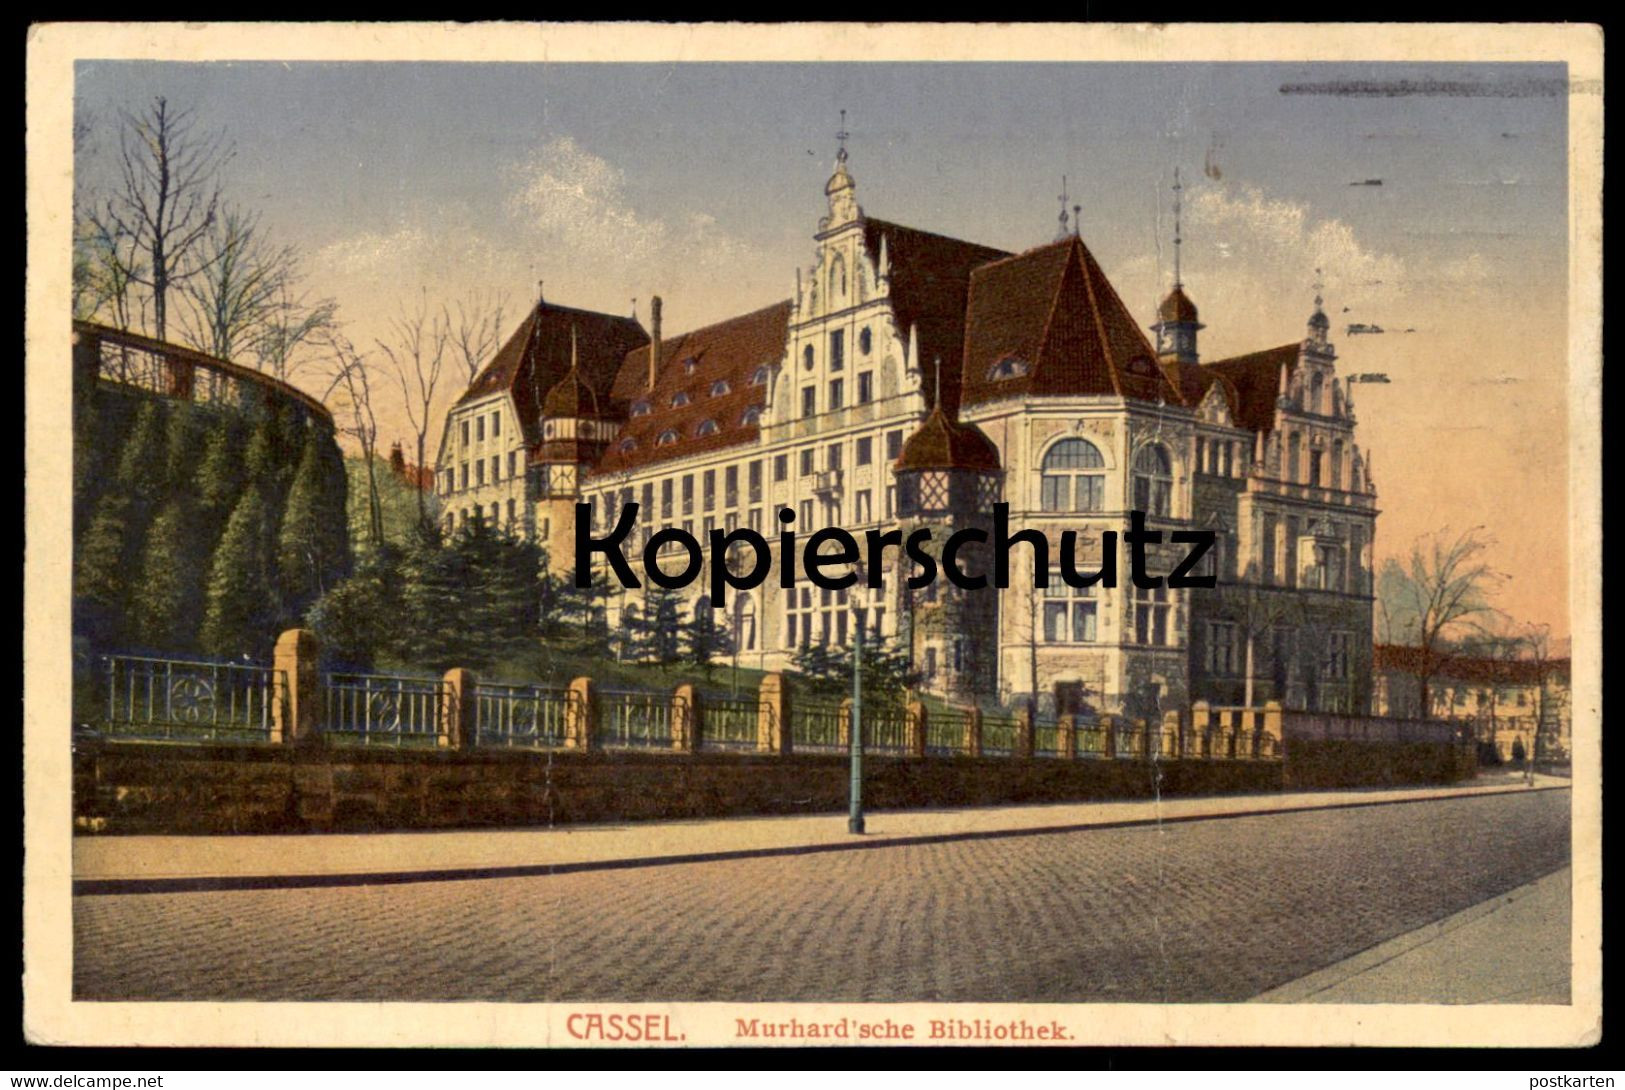 ALTE POSTKARTE CASSEL MURHARD'SCHE BIBLIOTHEK 1917 Kassel Library Bibliotheque Ansichtskarte Postcard AK Cpa - Bibliotheken